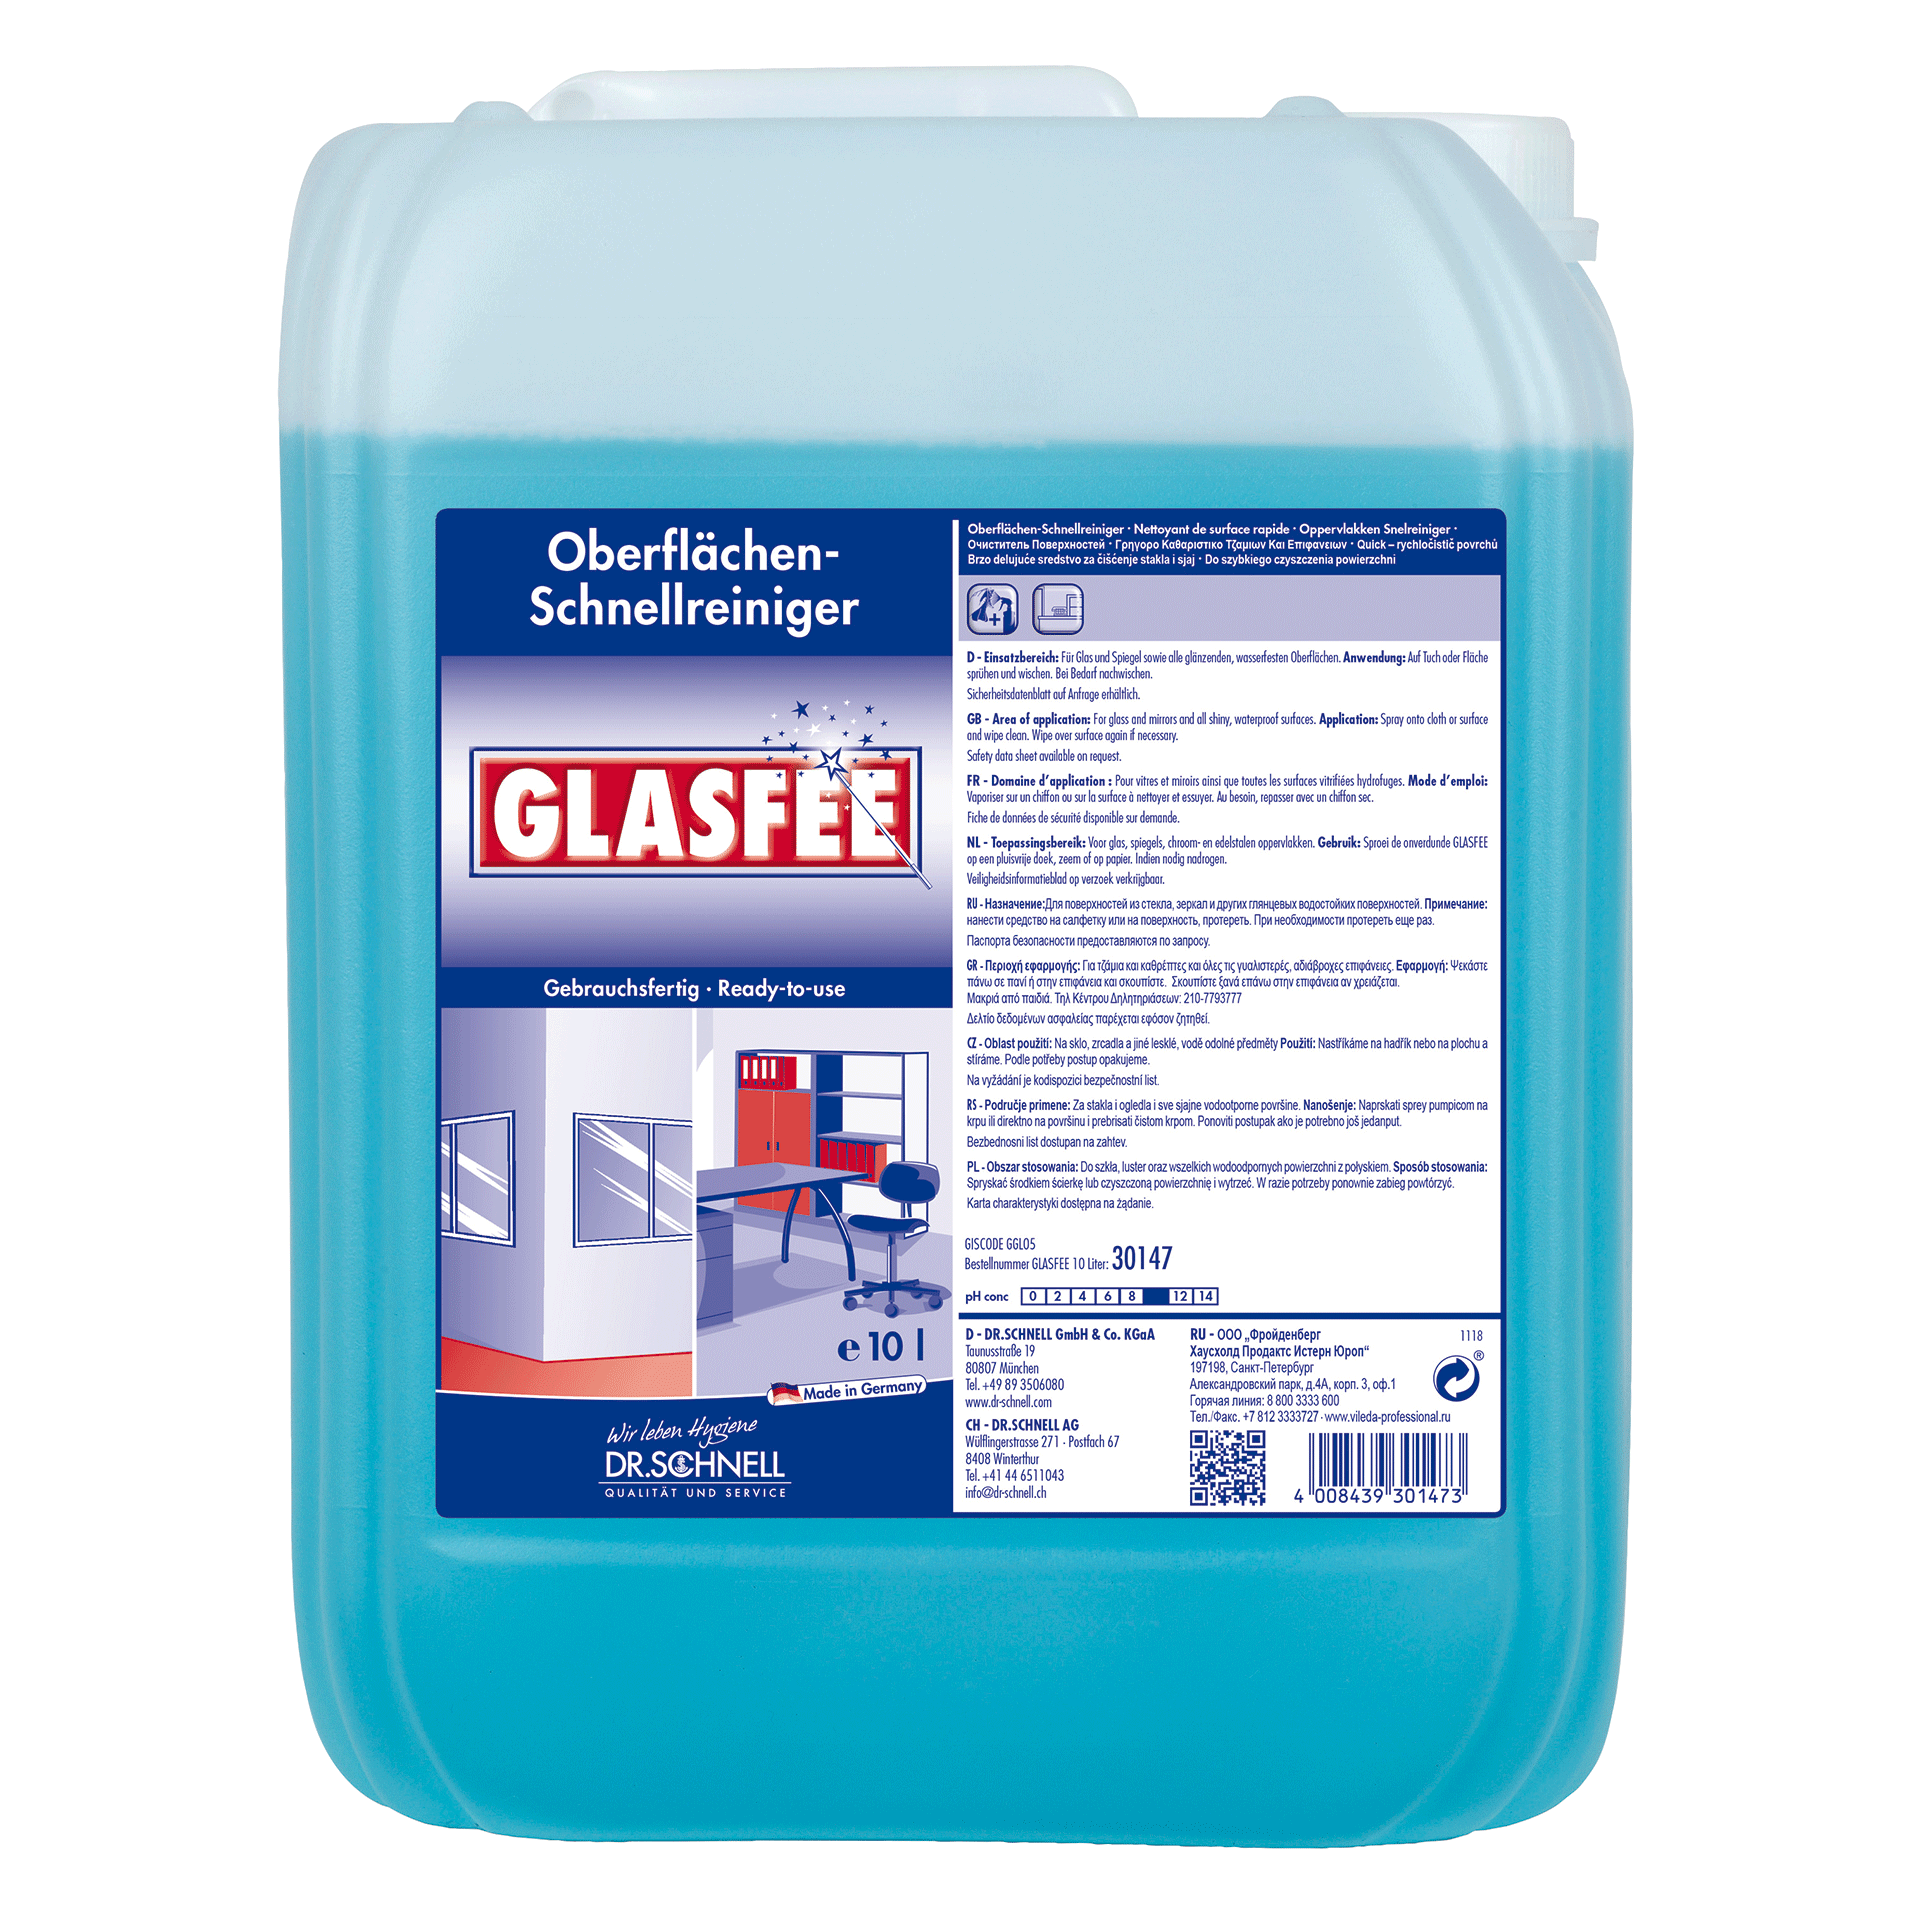 Dr. Schnell GLASFEE Oberflächen-Schnellreiniger 10 L Kanister